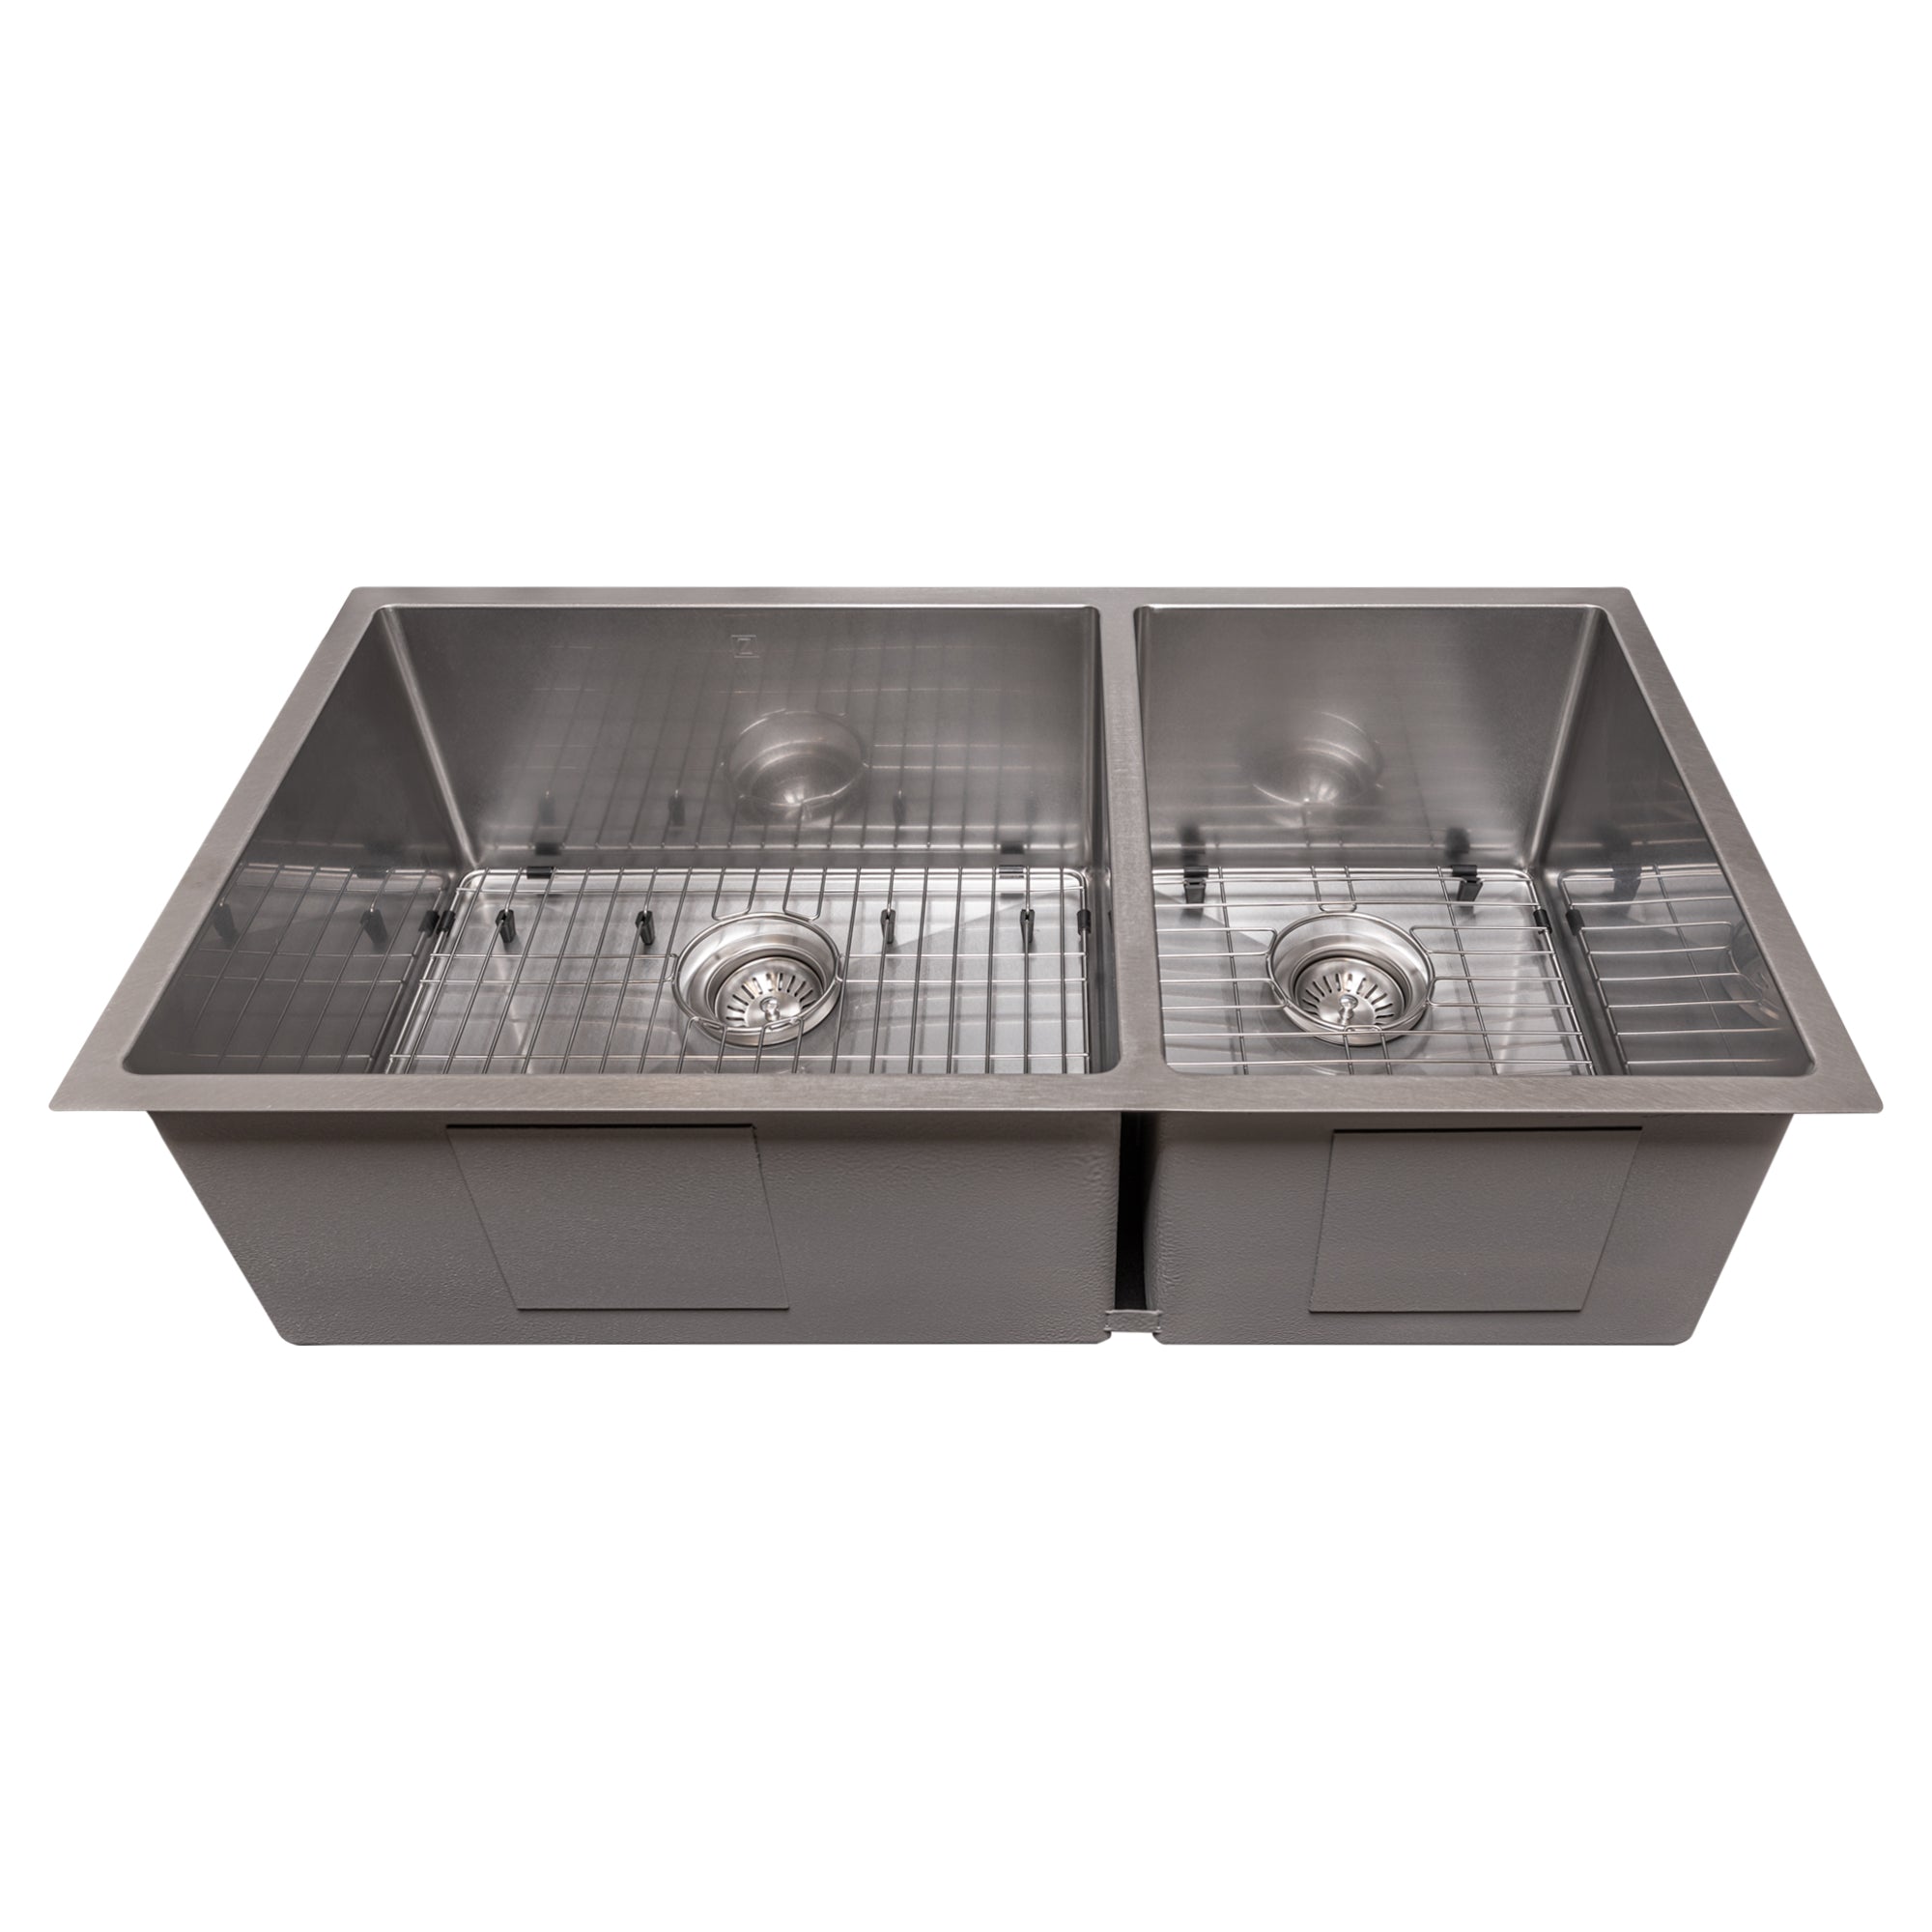 ZLINE 36 in. Chamonix Undermount Double Bowl Kitchen Sink with Bottom Grid in DuraSnow Stainless Steel